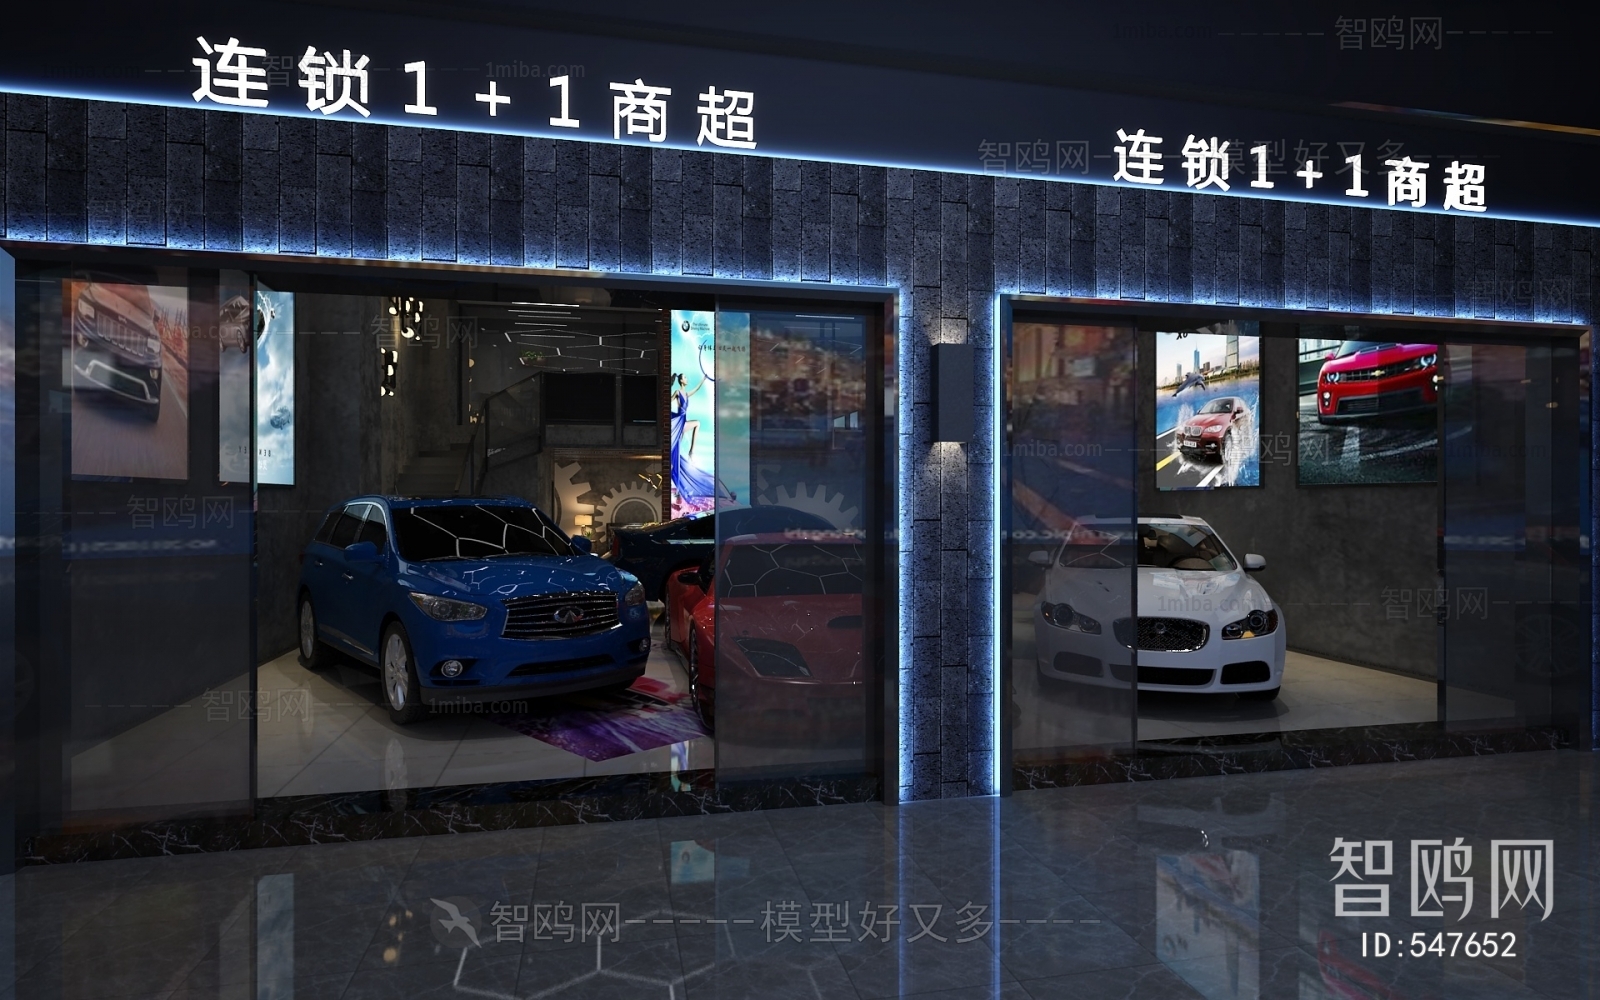 Modern Automobile 4S Shop